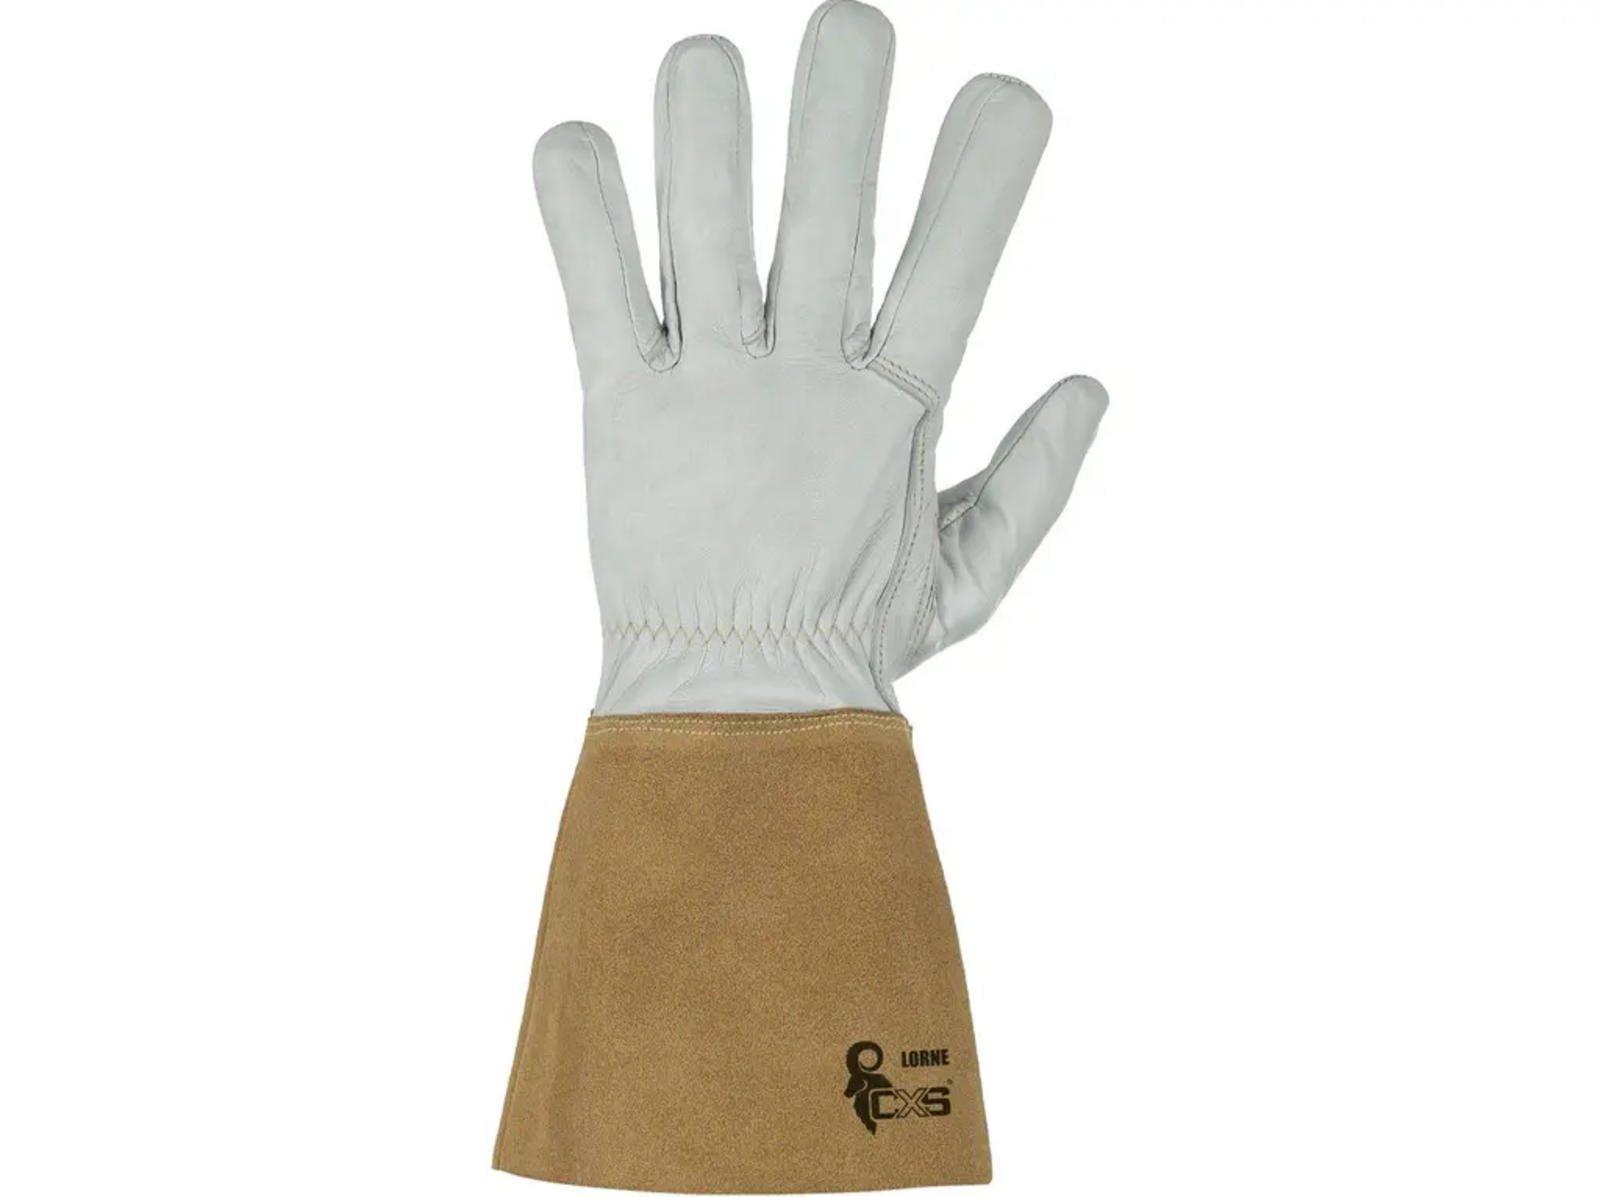 Zváračské rukavice CXS Lorne - veľkosť: 9/L, farba: sivá/hnedá